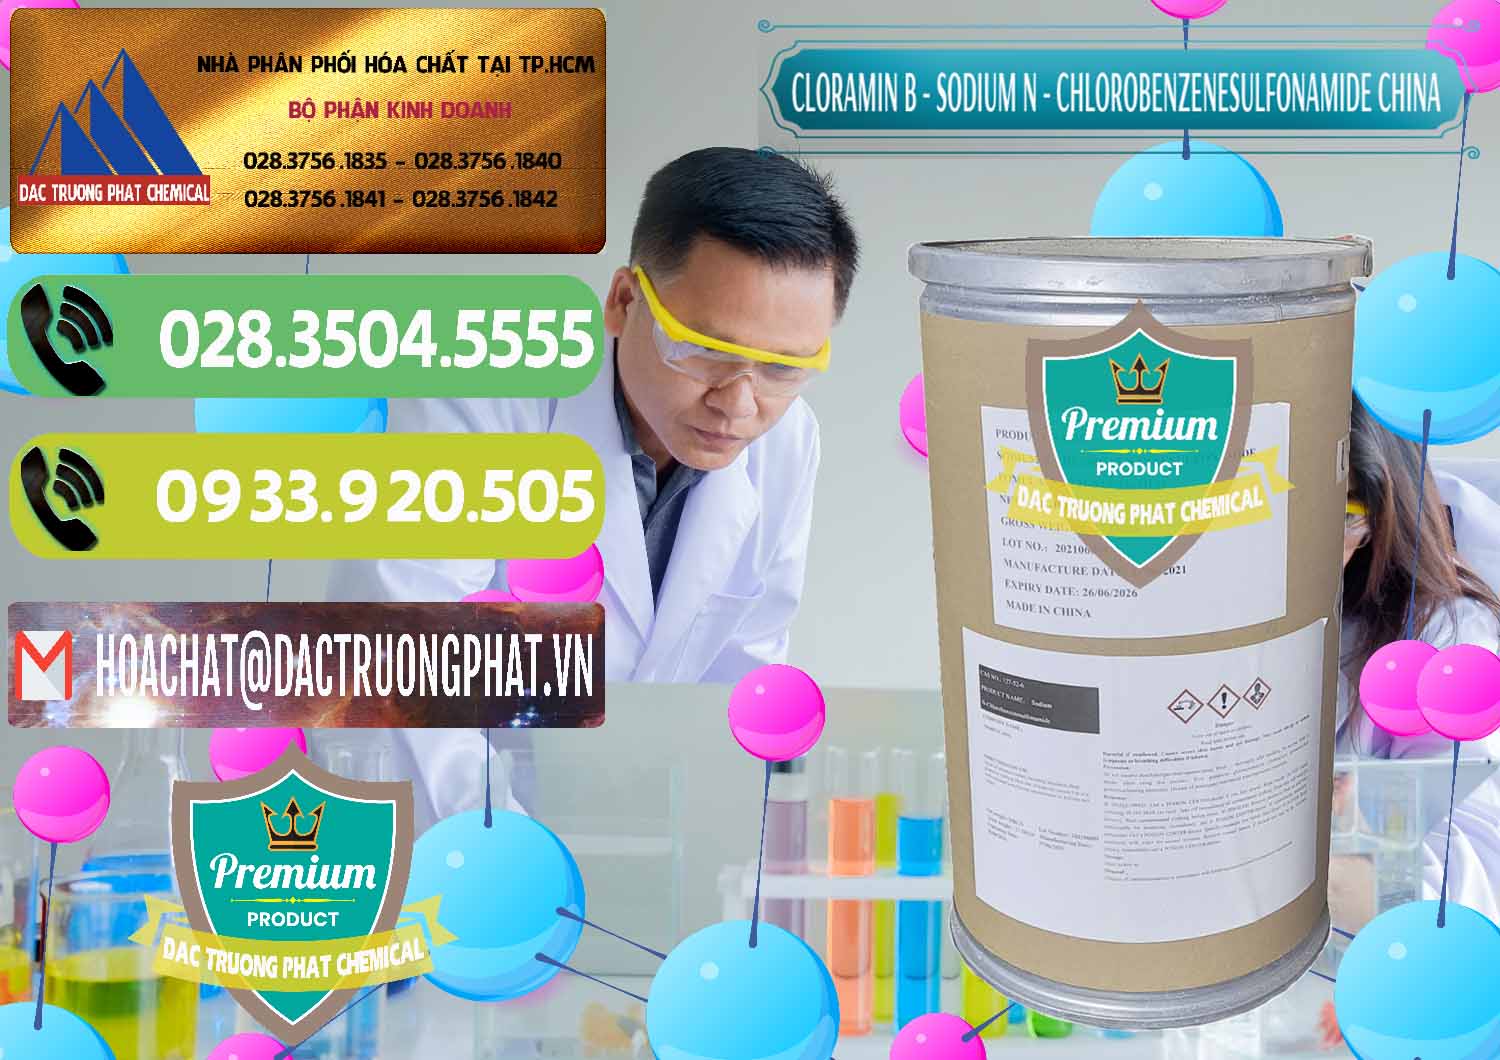 Công ty cung cấp _ bán Cloramin B Khử Trùng, Diệt Khuẩn Trung Quốc China - 0298 - Nơi chuyên phân phối ( cung ứng ) hóa chất tại TP.HCM - hoachatmientay.vn